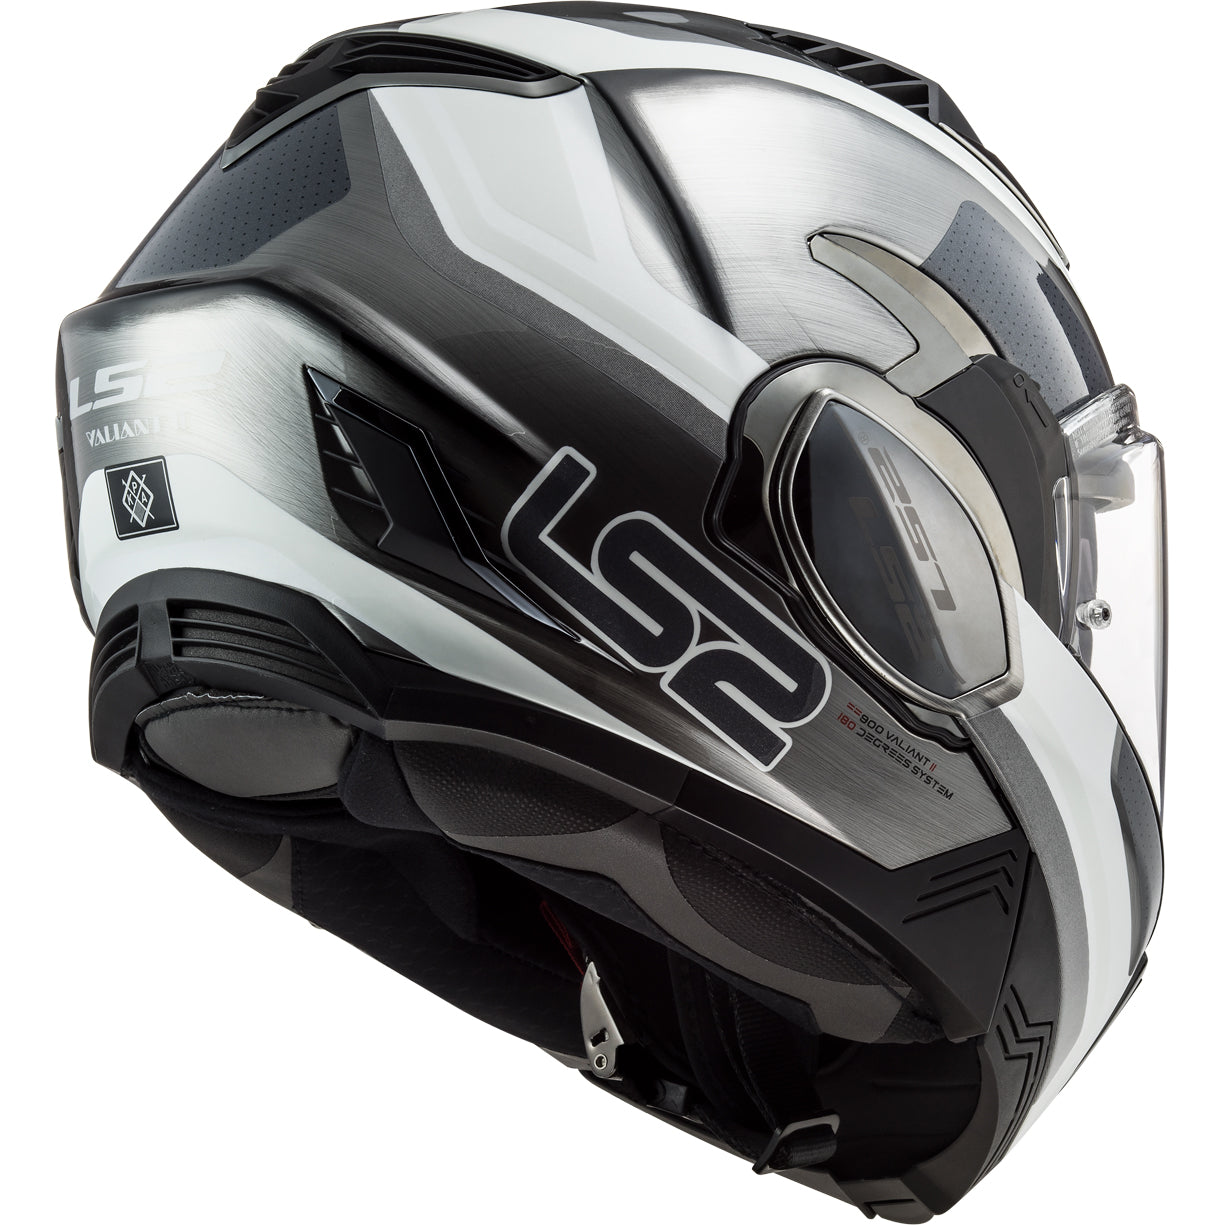 LS2 Helmets Valiant II Orbit Motorcycle Modular Helmet